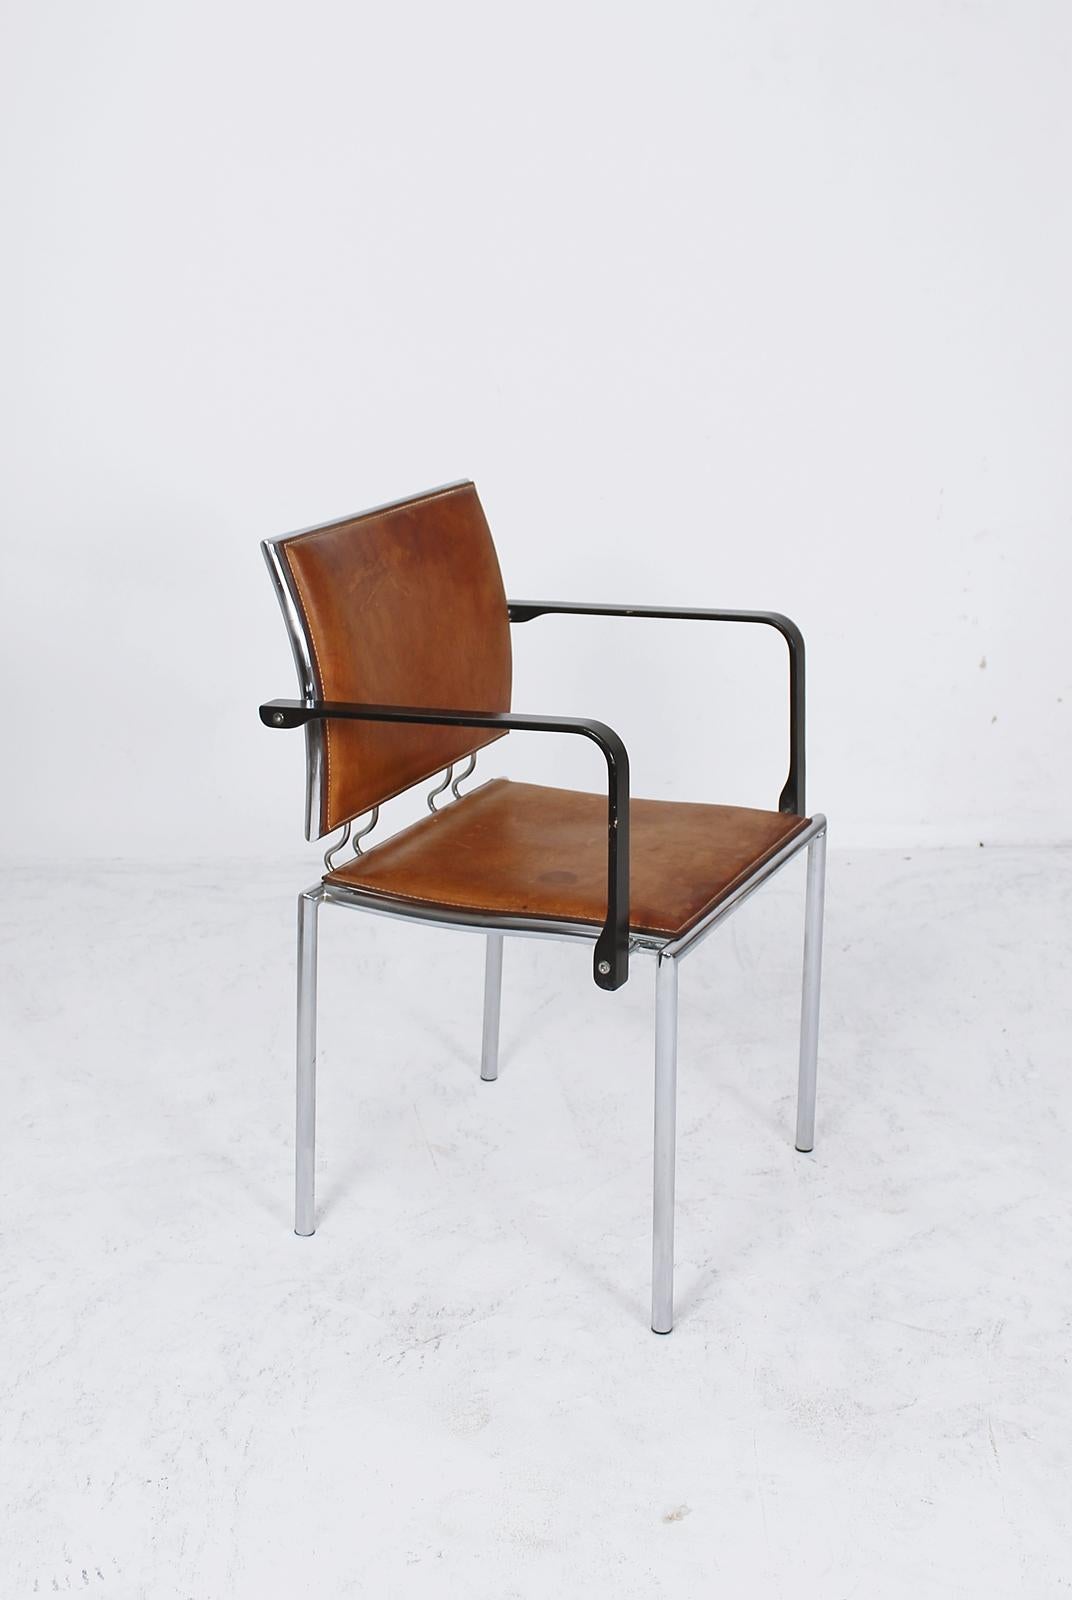 Timeless design armchair by Dietiker, Switzerland.
